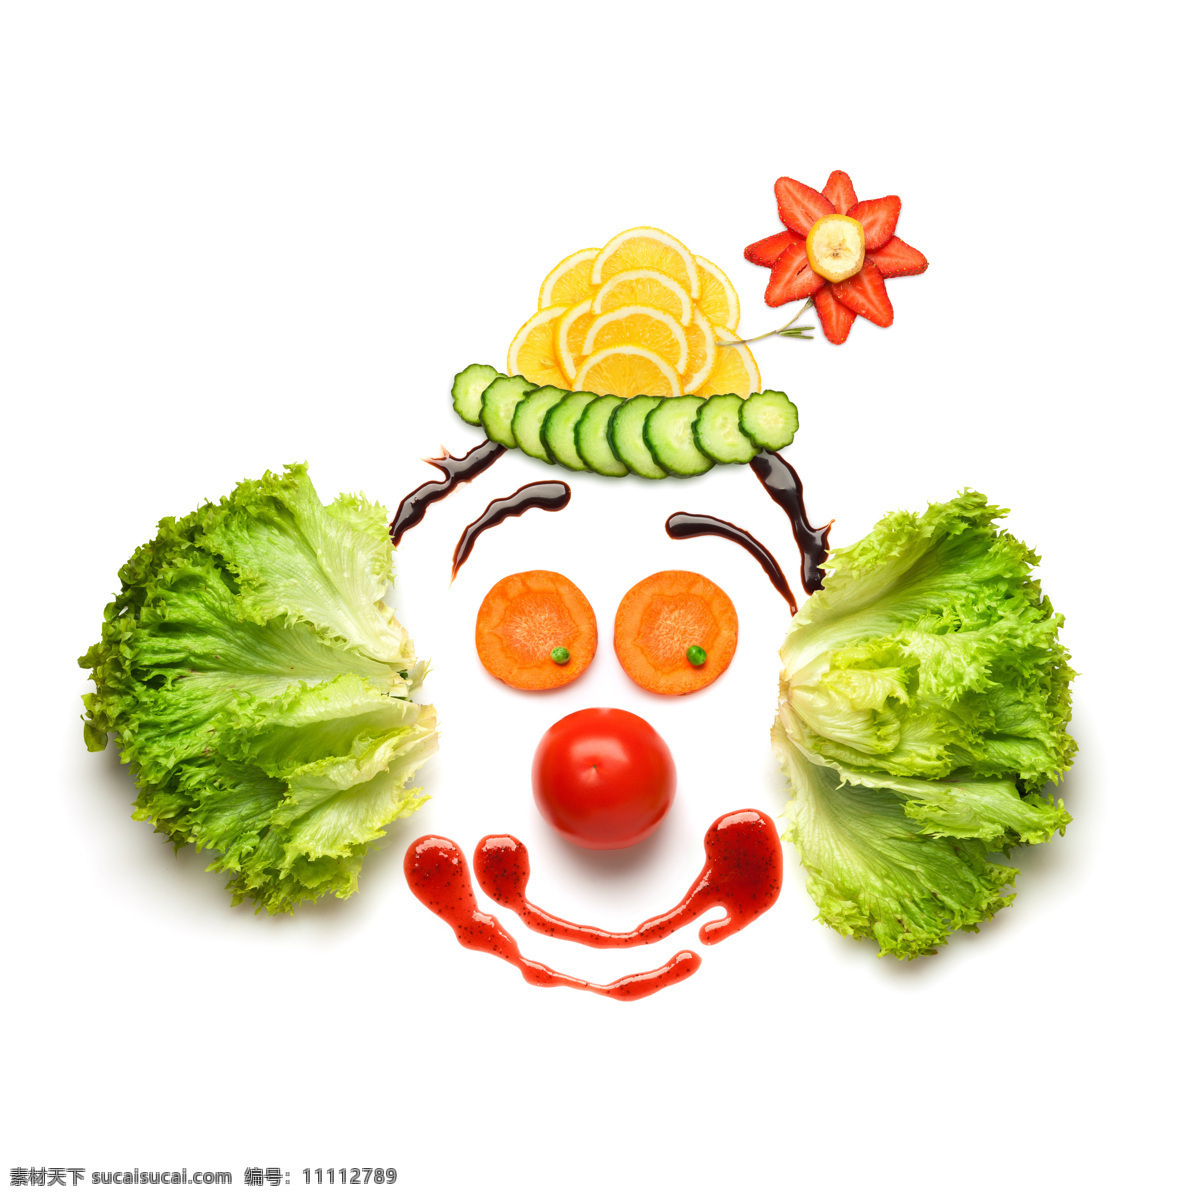 蔬菜水果 组成 小丑 新鲜蔬菜 番茄 西红柿 生菜 柠檬 草莓 新鲜水果 水果蔬菜 餐饮美食 白色